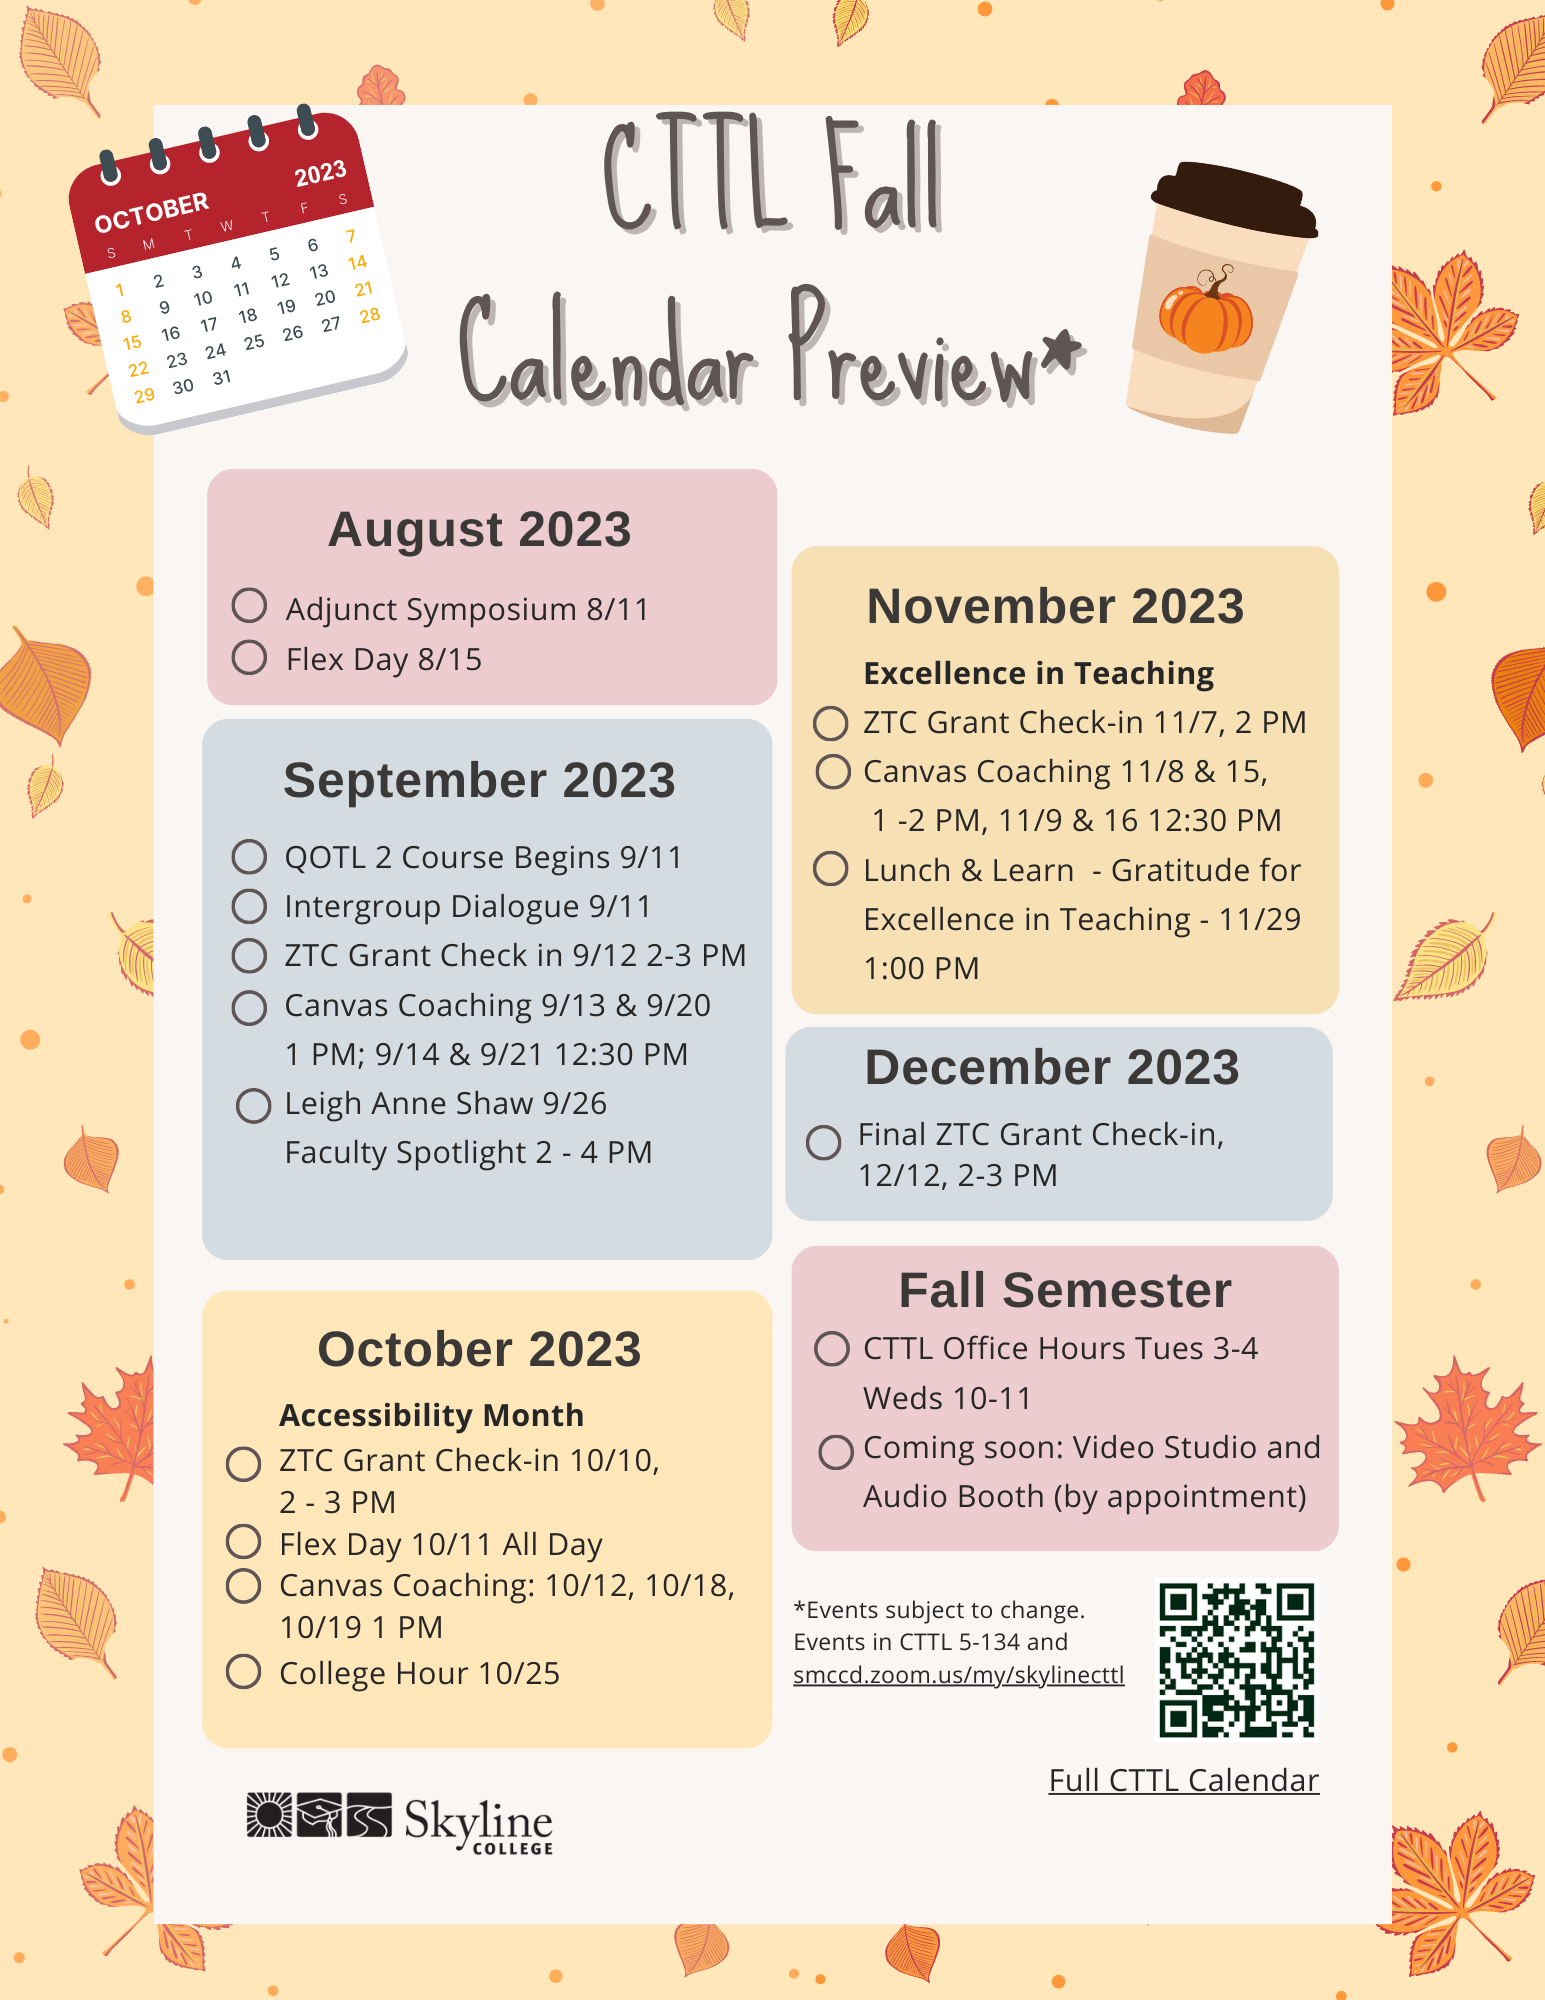 cttl fall preview calendar